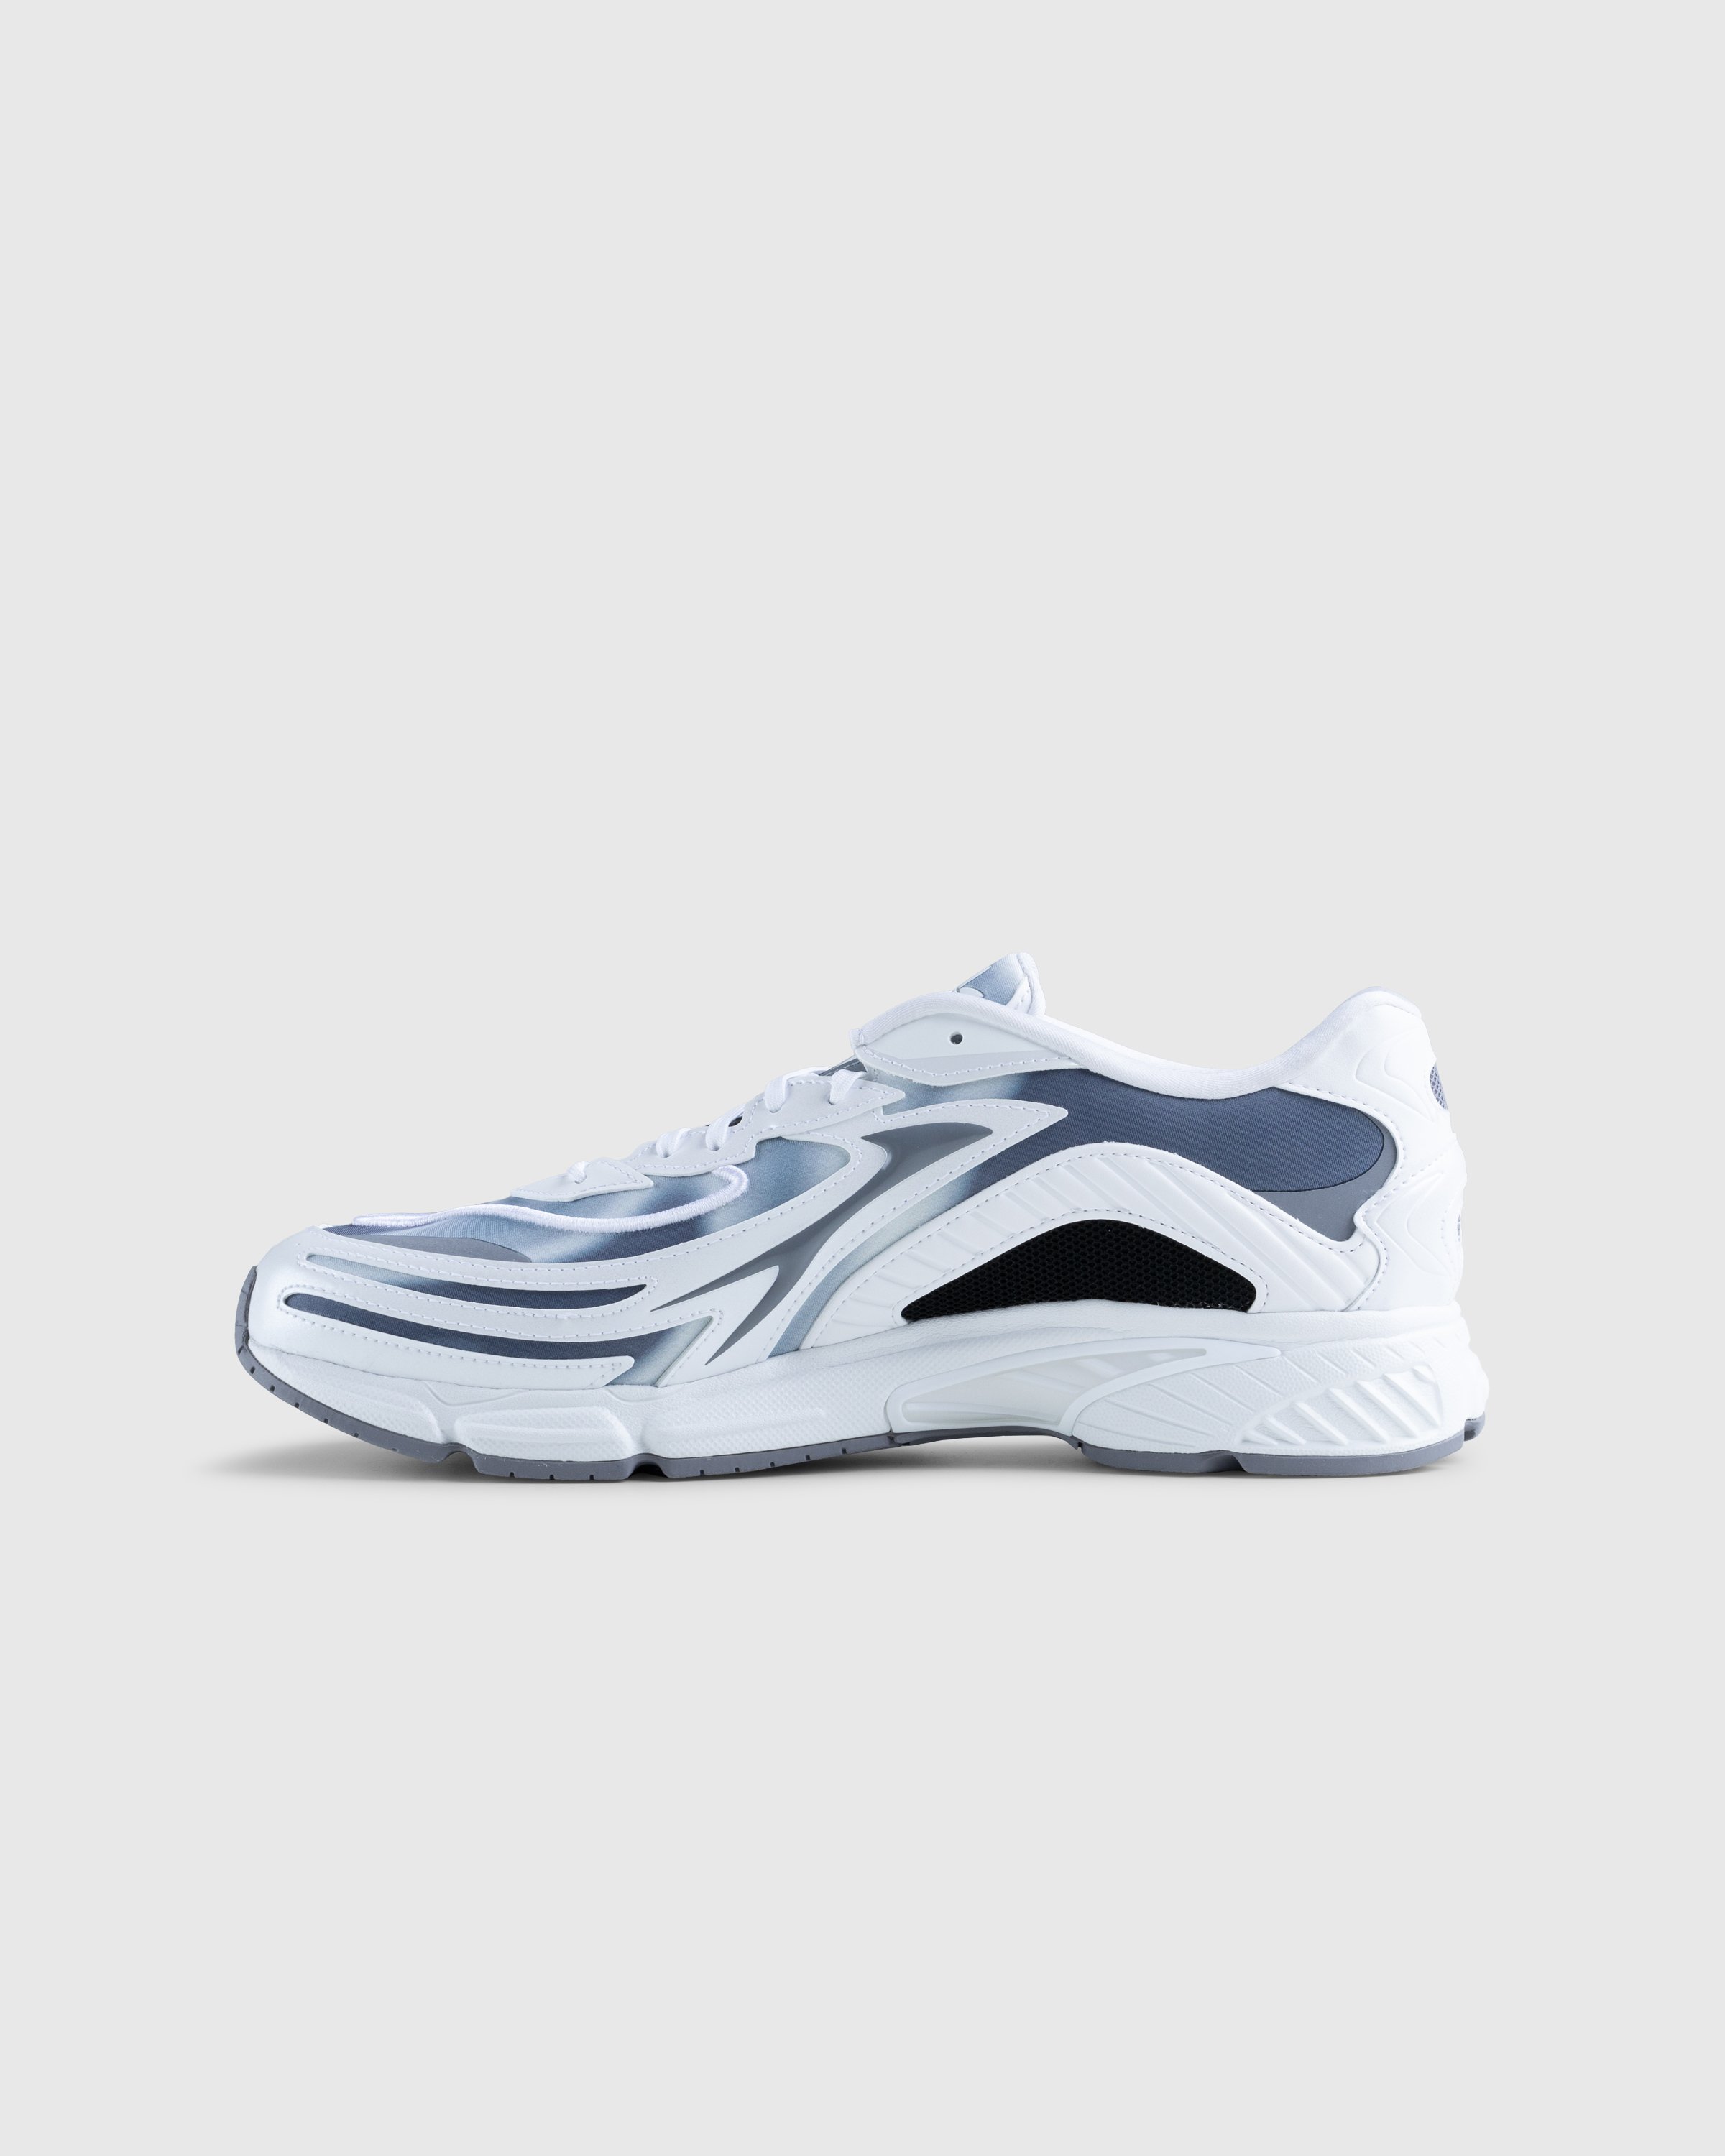 Adidas - Orketro White - Footwear - White - Image 2